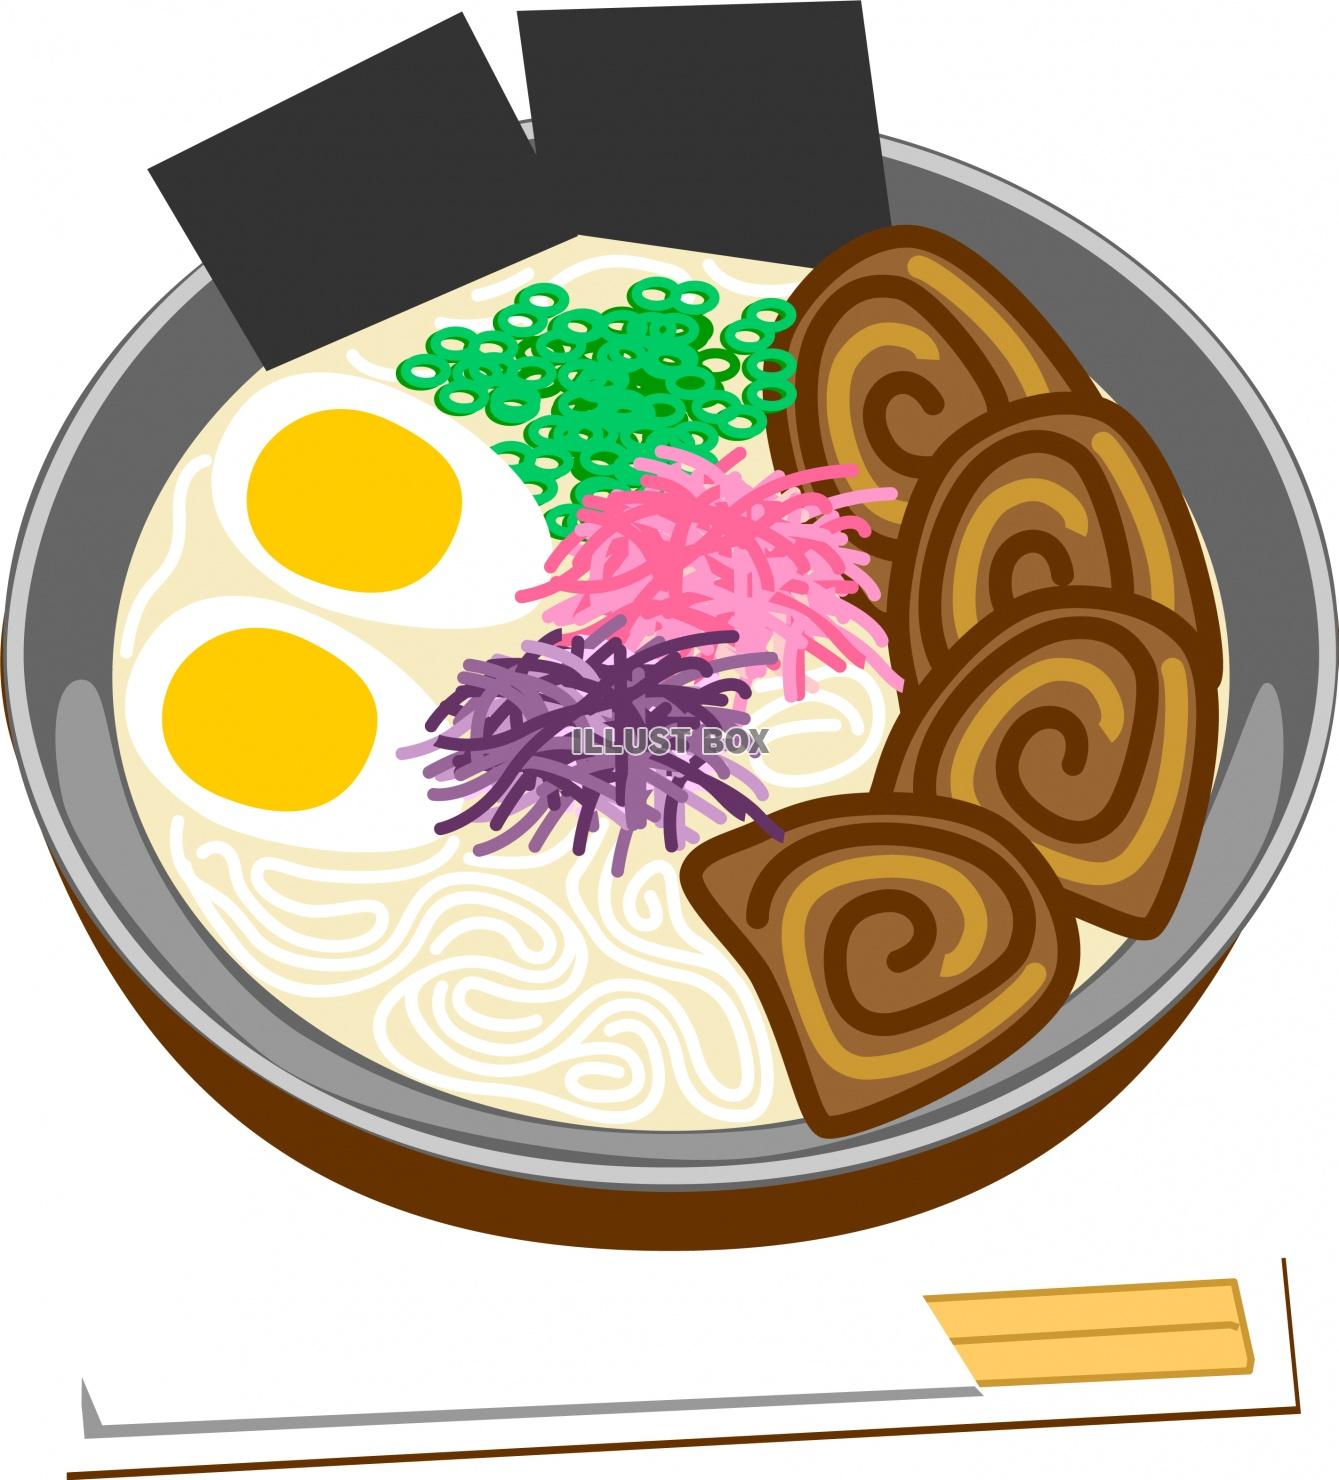 無料イラスト 日本食麺類とんこつラーメンのイラスト